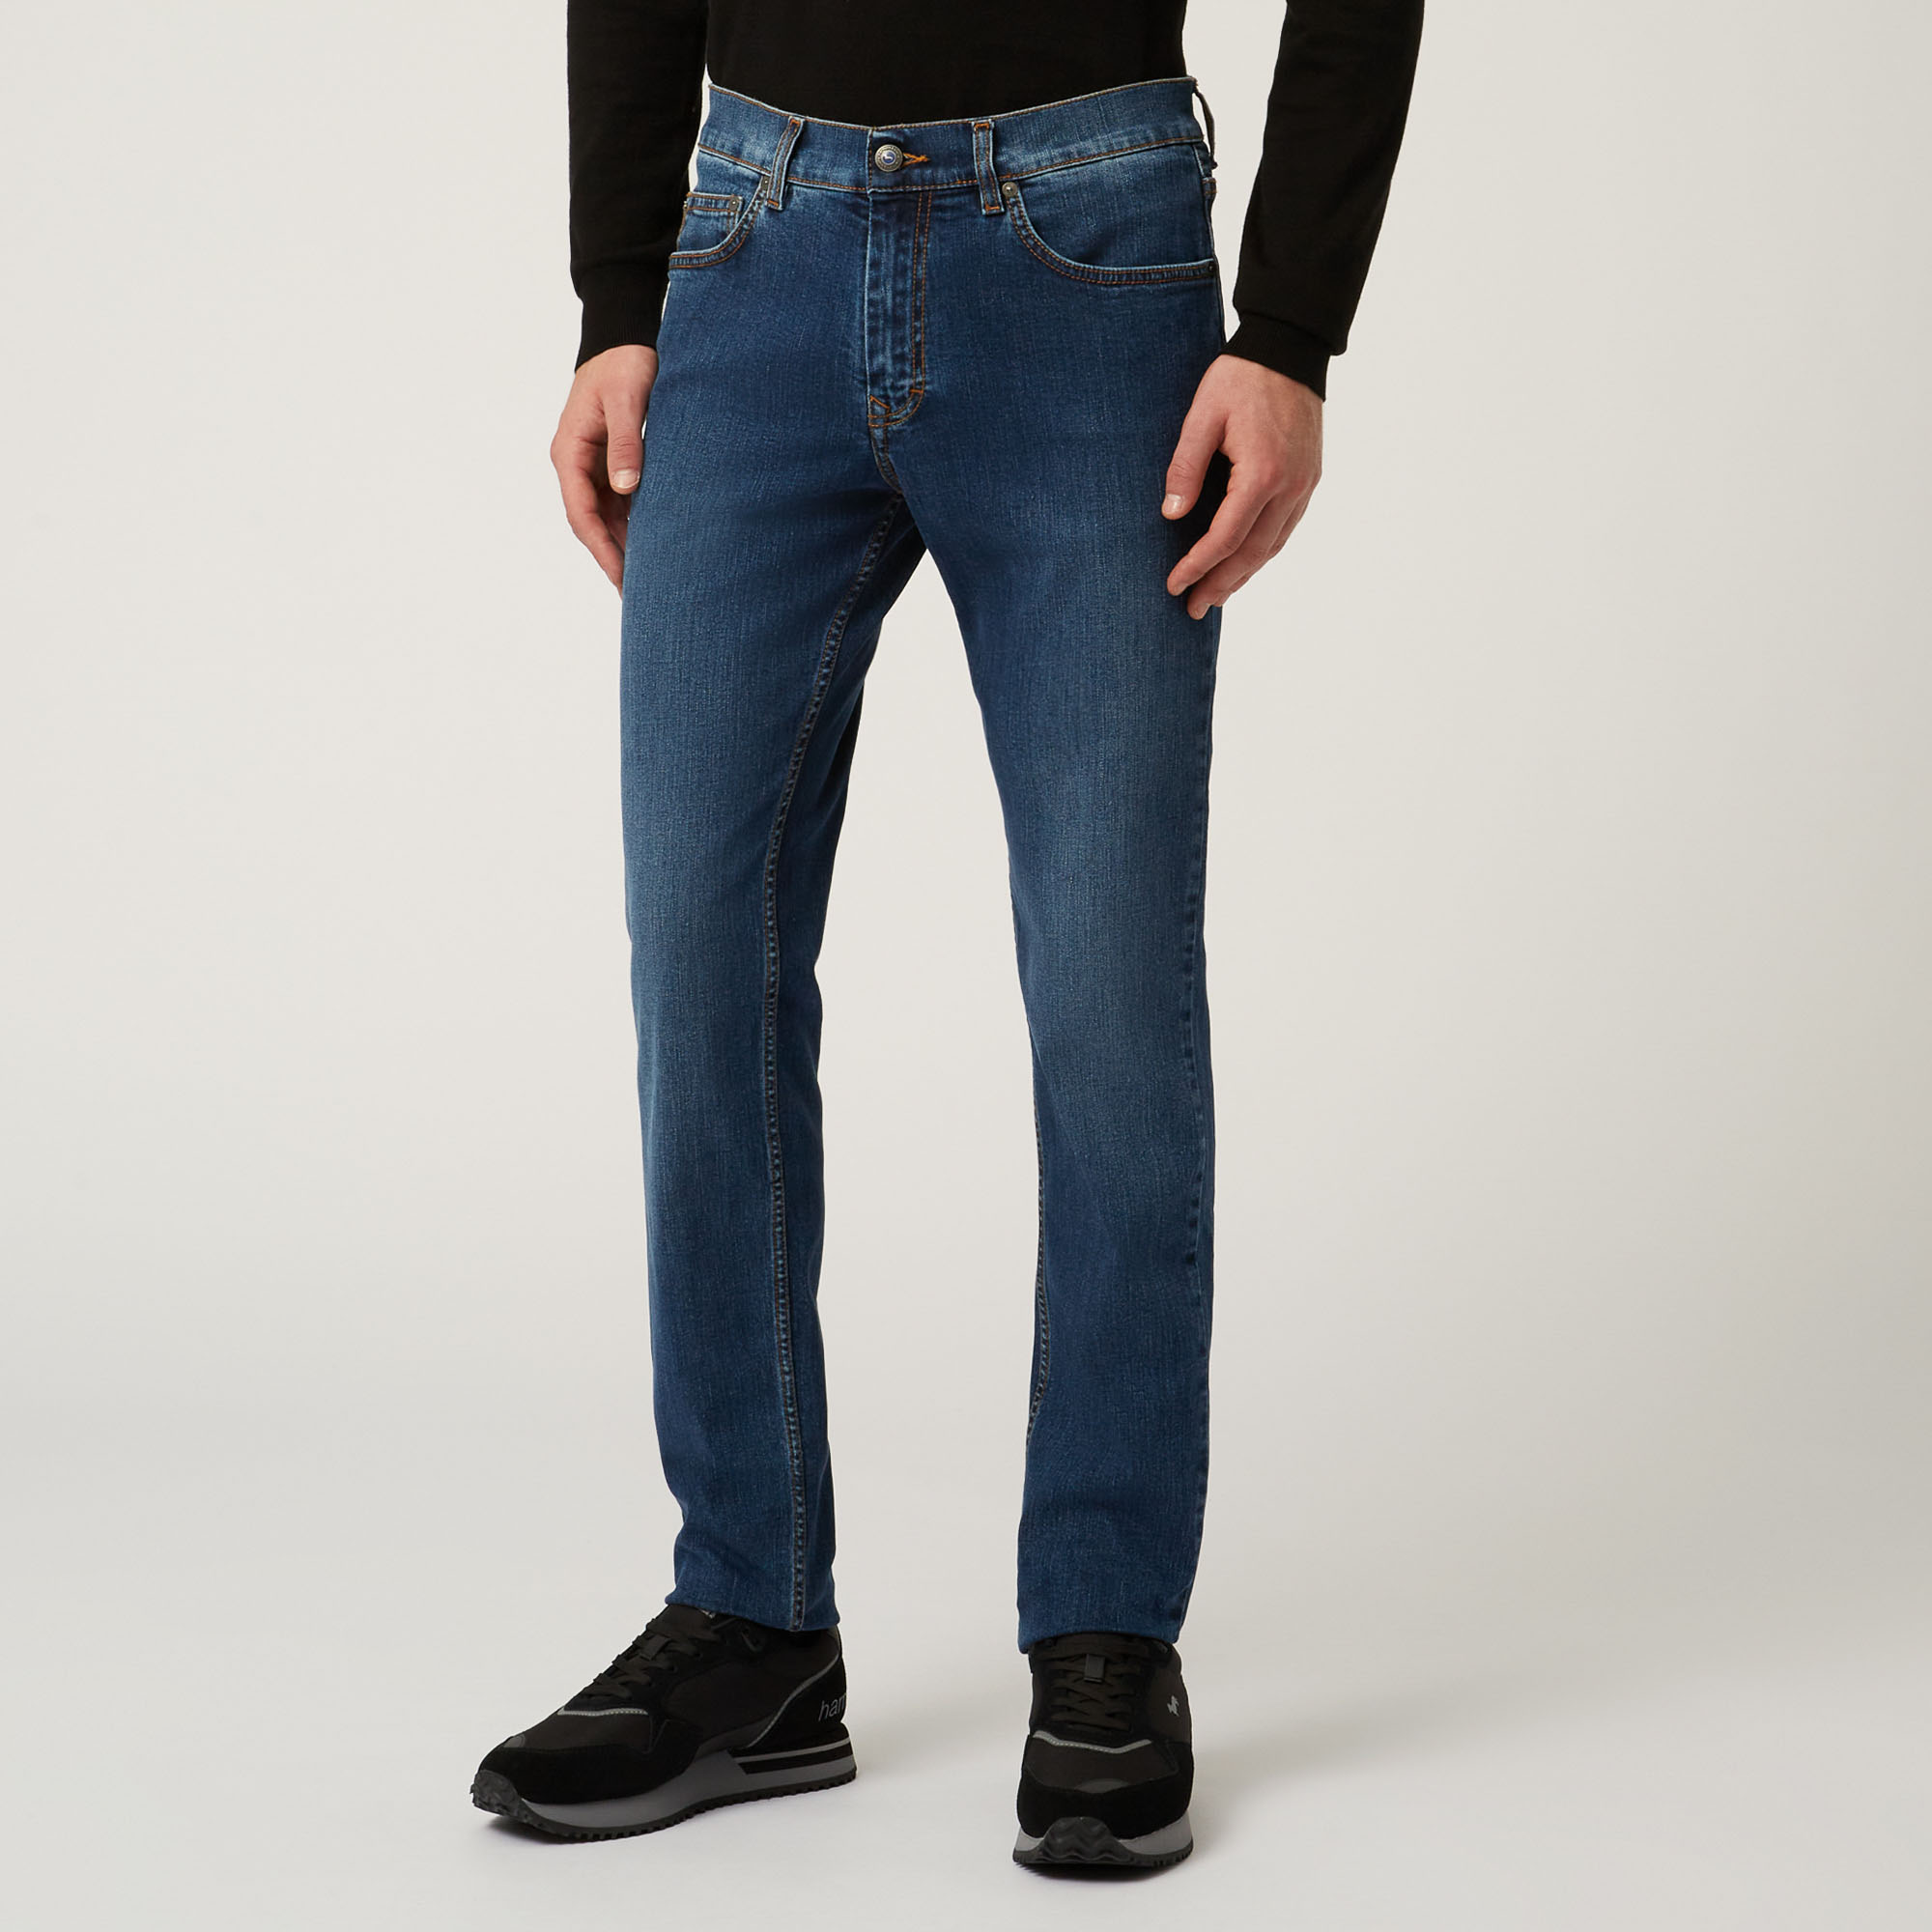 Essentials jeans mit fünf taschen, Blau, large